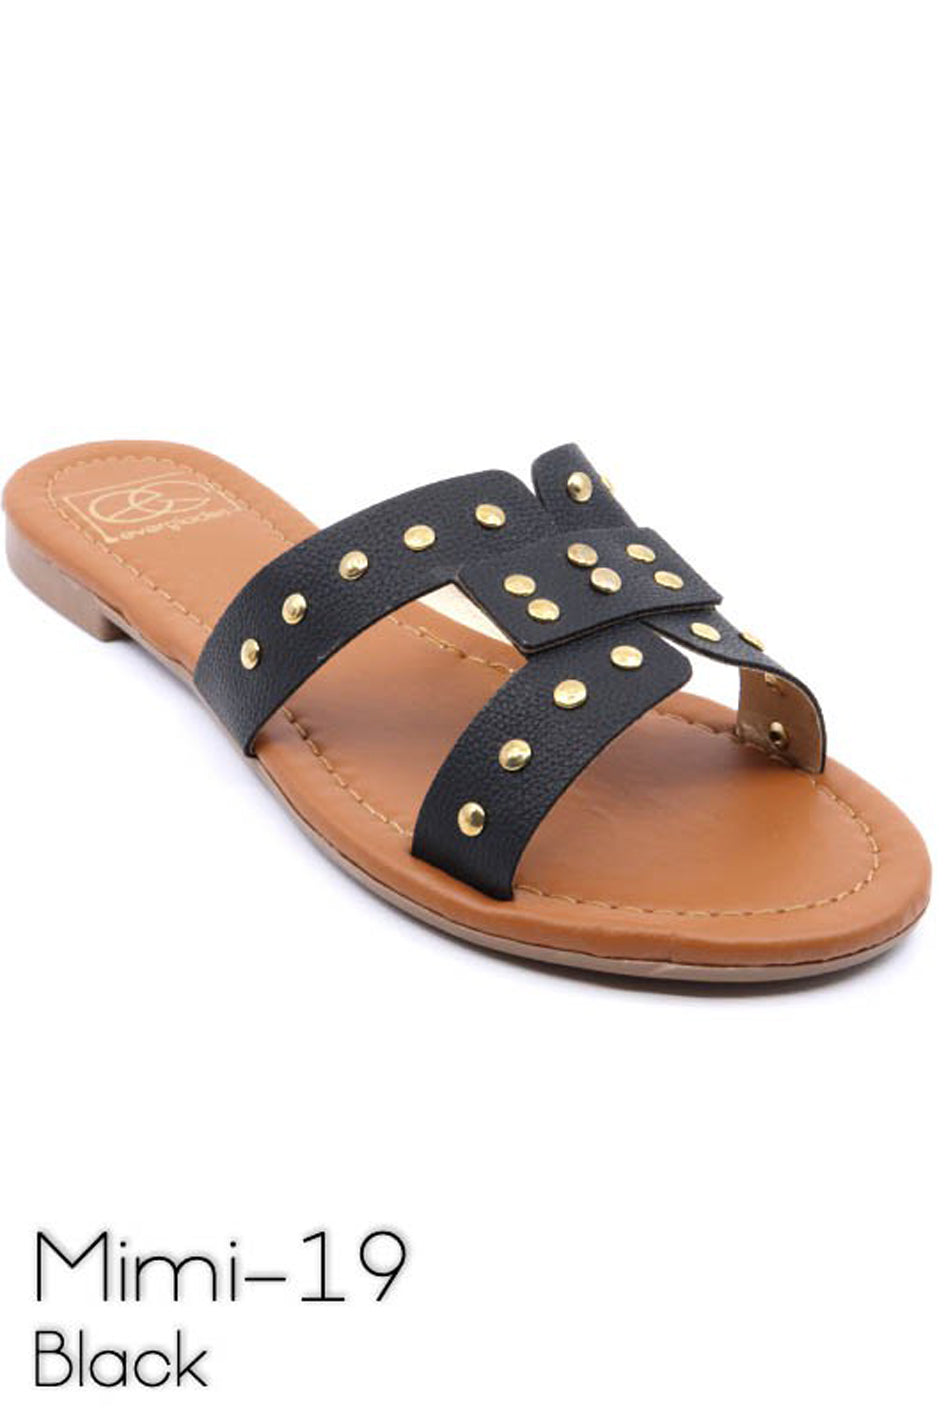 Slide sandal with rivet studs - Azoroh